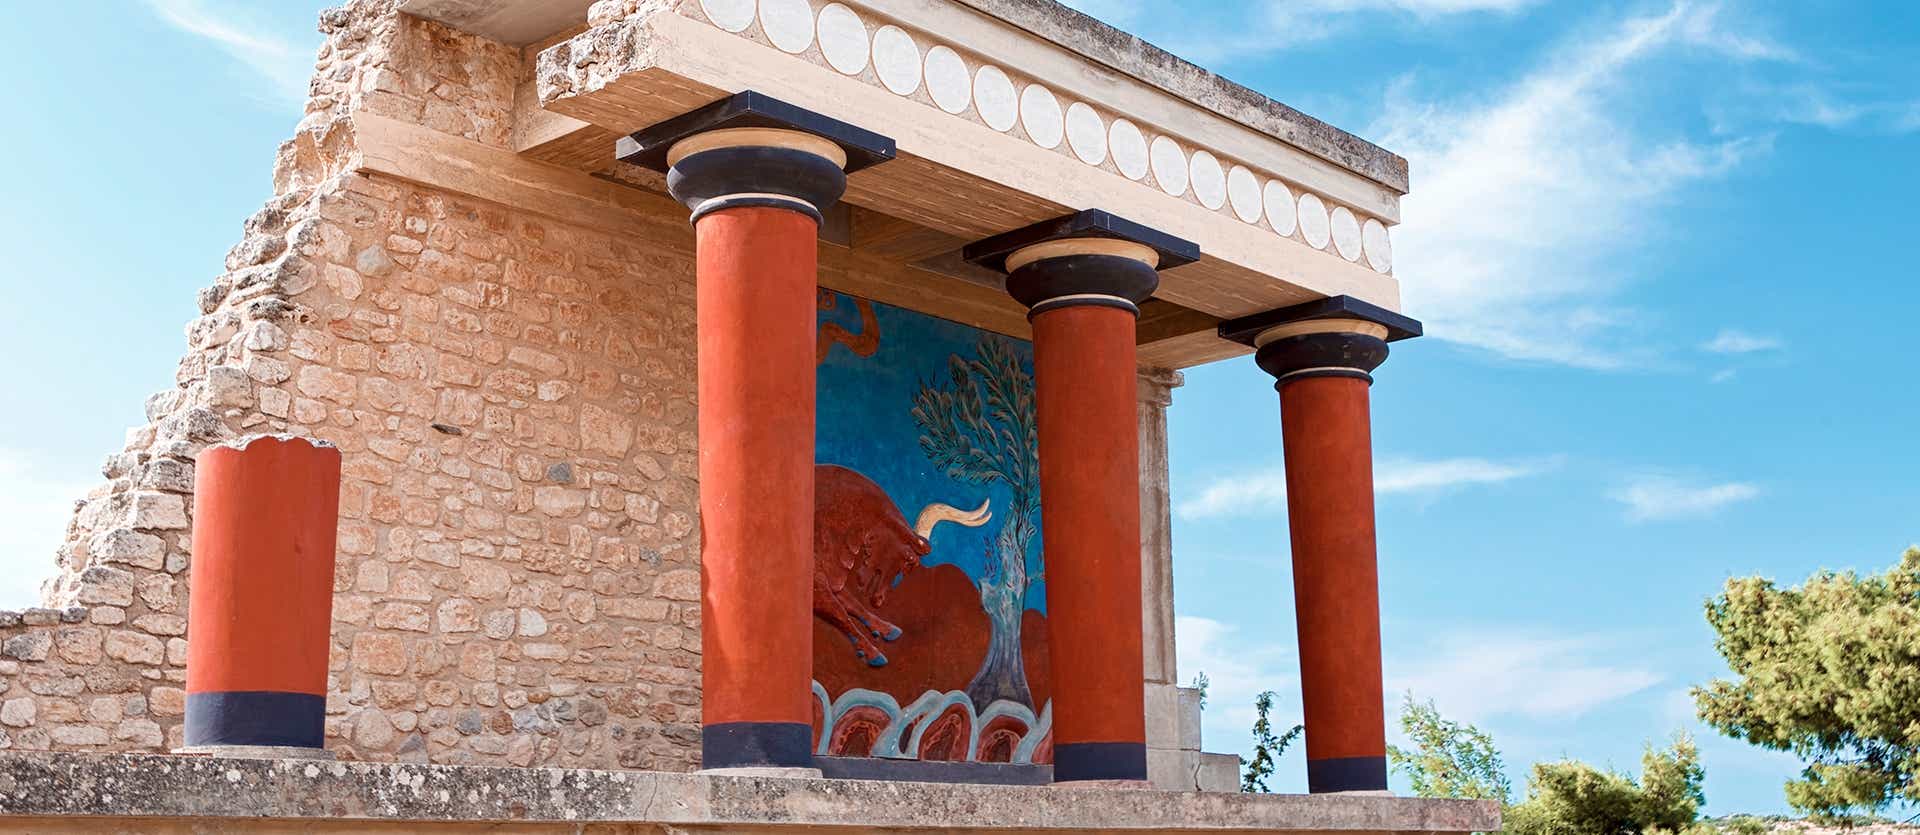 Palace of Knossos <span class="iconos separador"></span> Crete